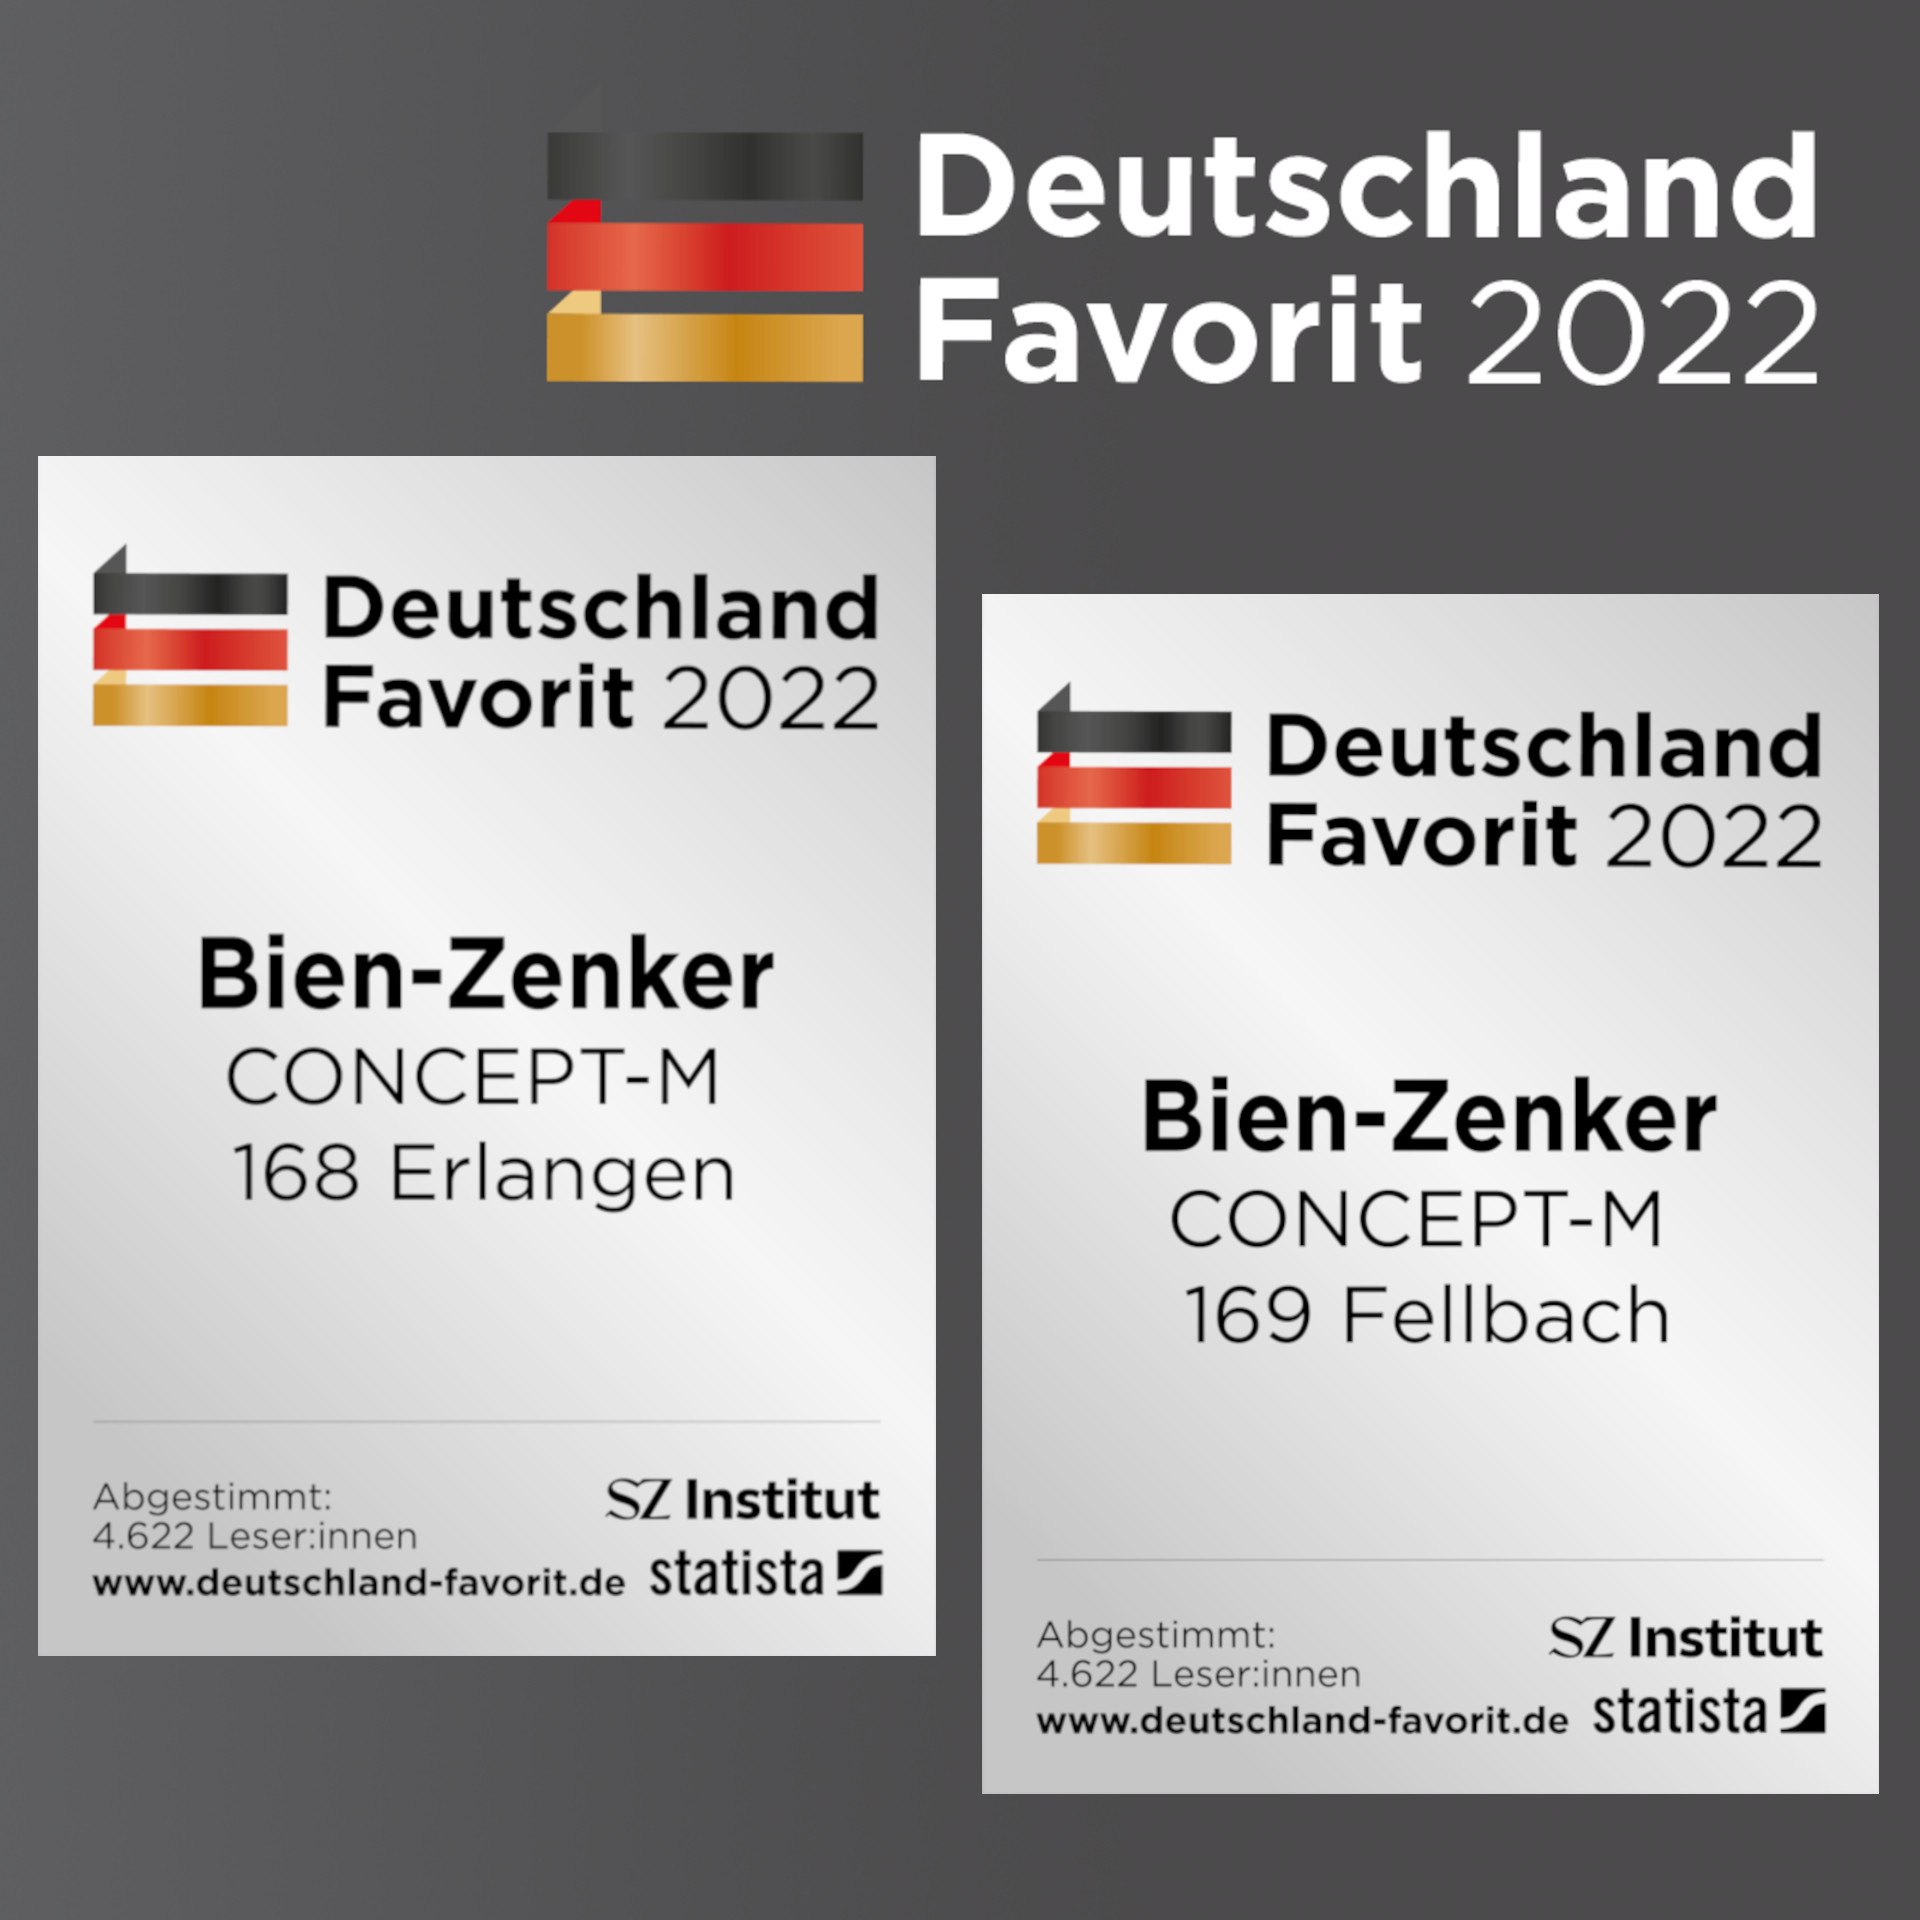 Bien-Zenker erhält Auszeichnung „Deutschland Favorit 2022“